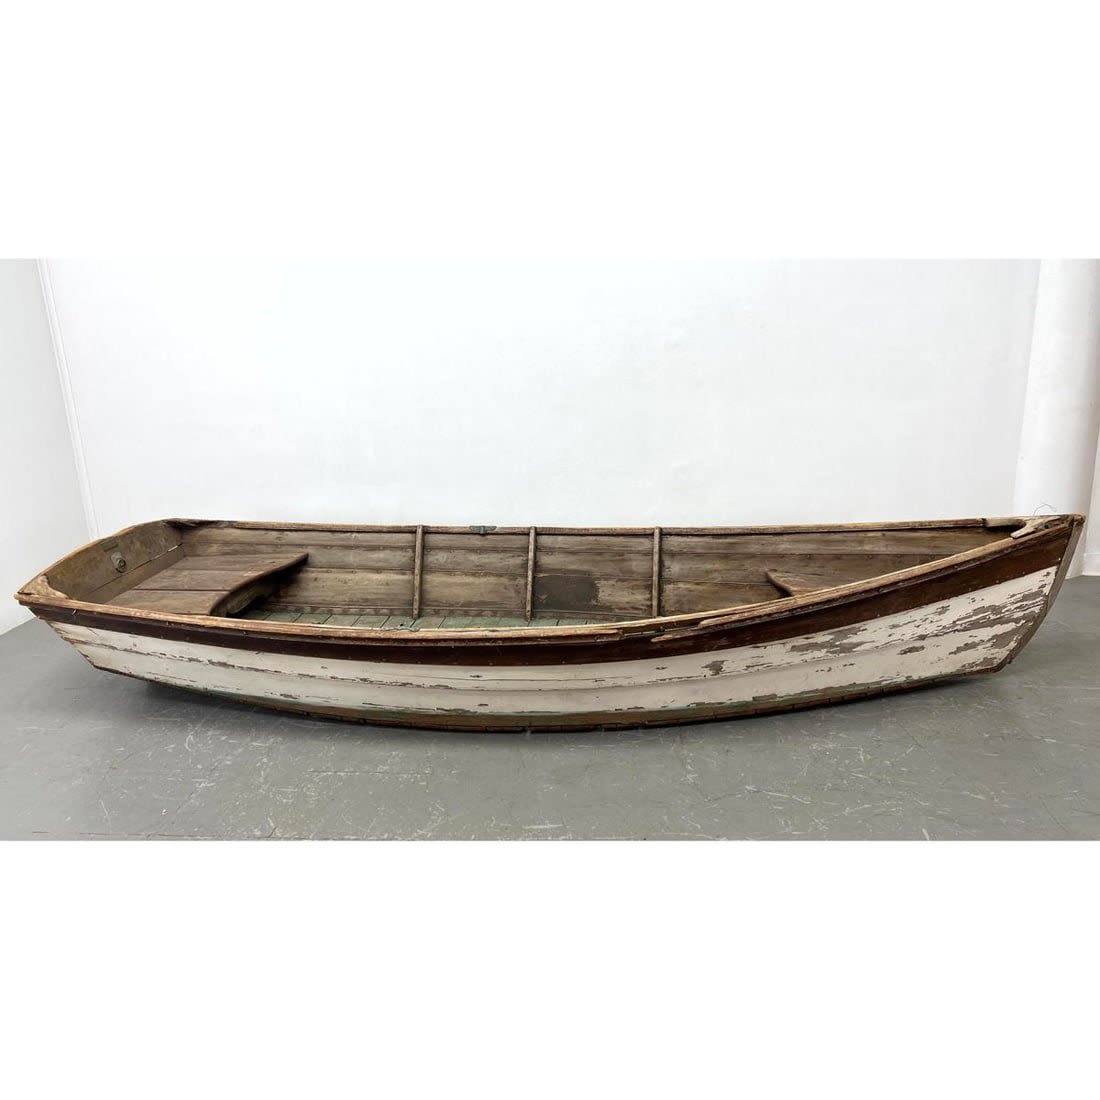 11 foot Vintage Wood Rowboat Painted 3cf393